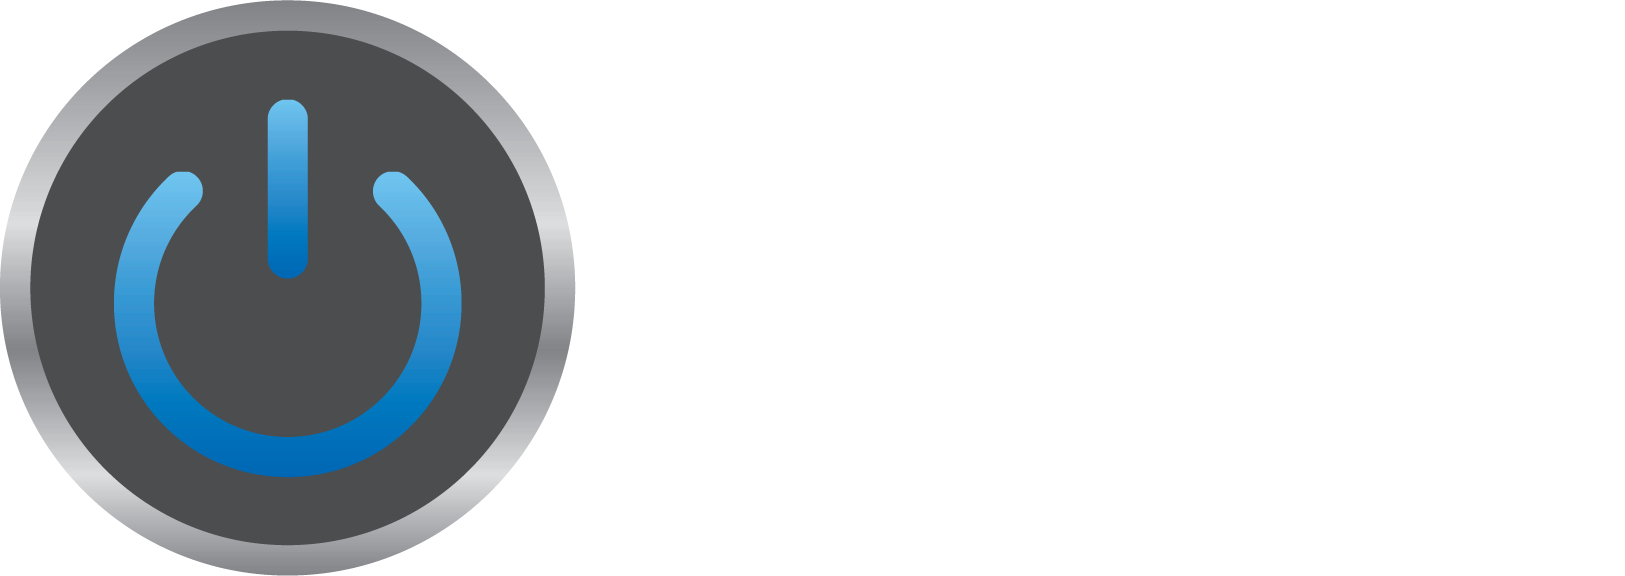 Merkert Tech Logo